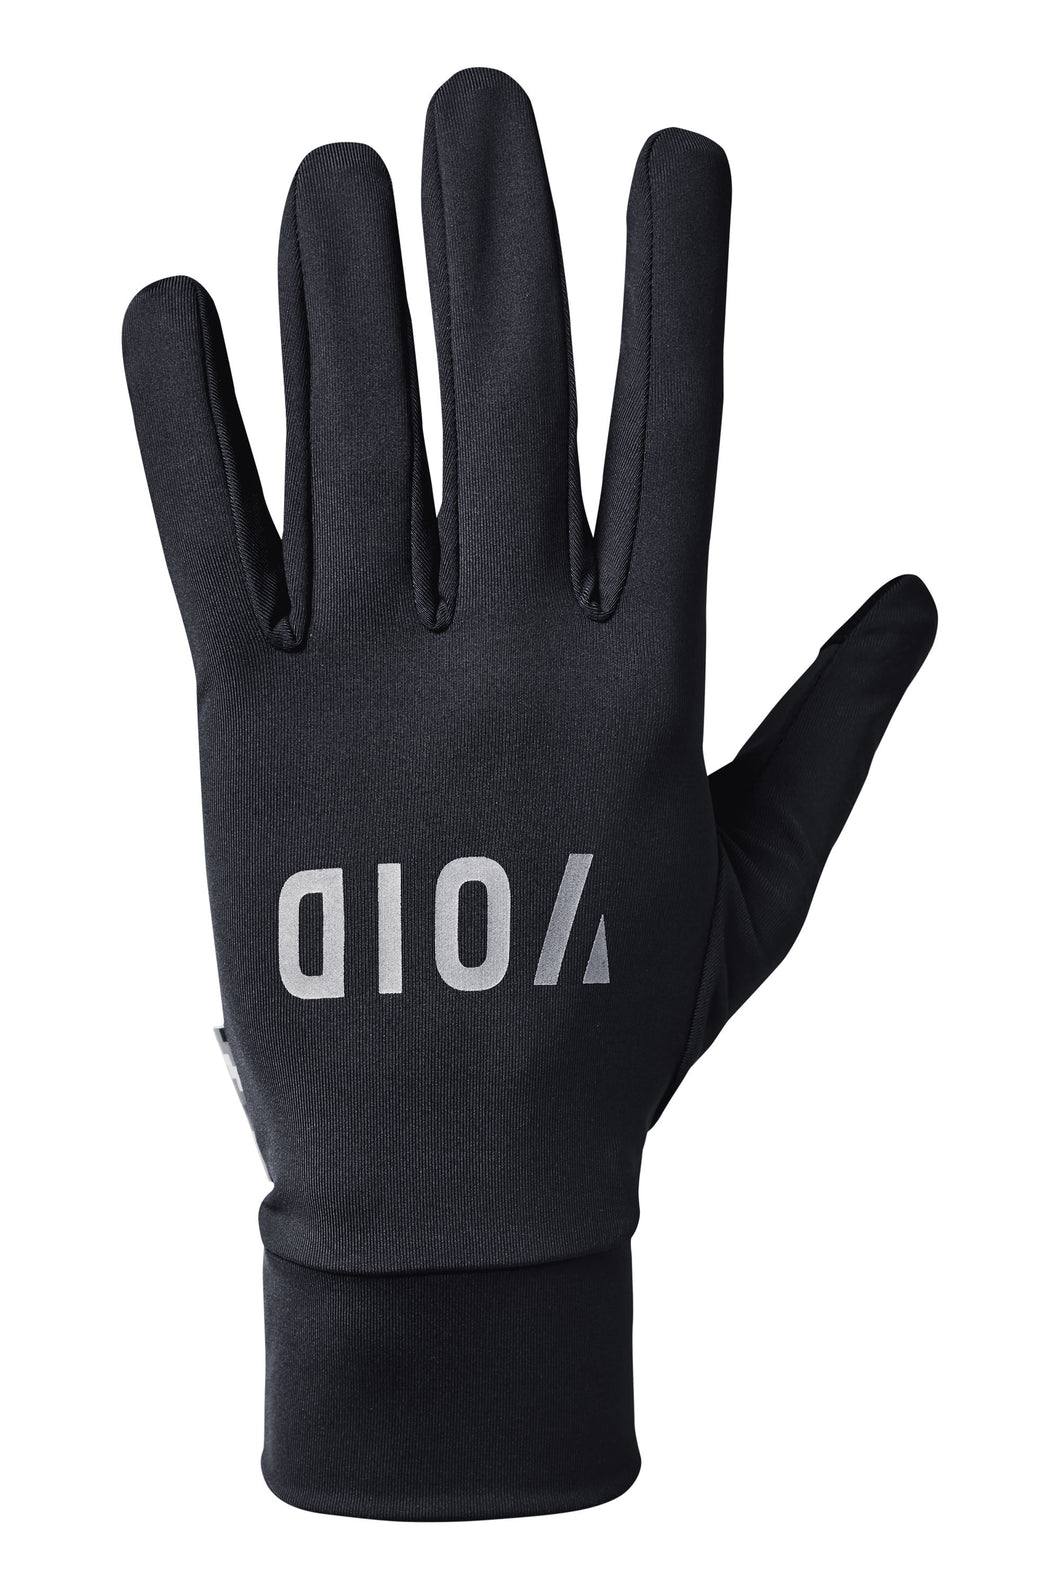 VOID Vent Mid Season Gloves - Black